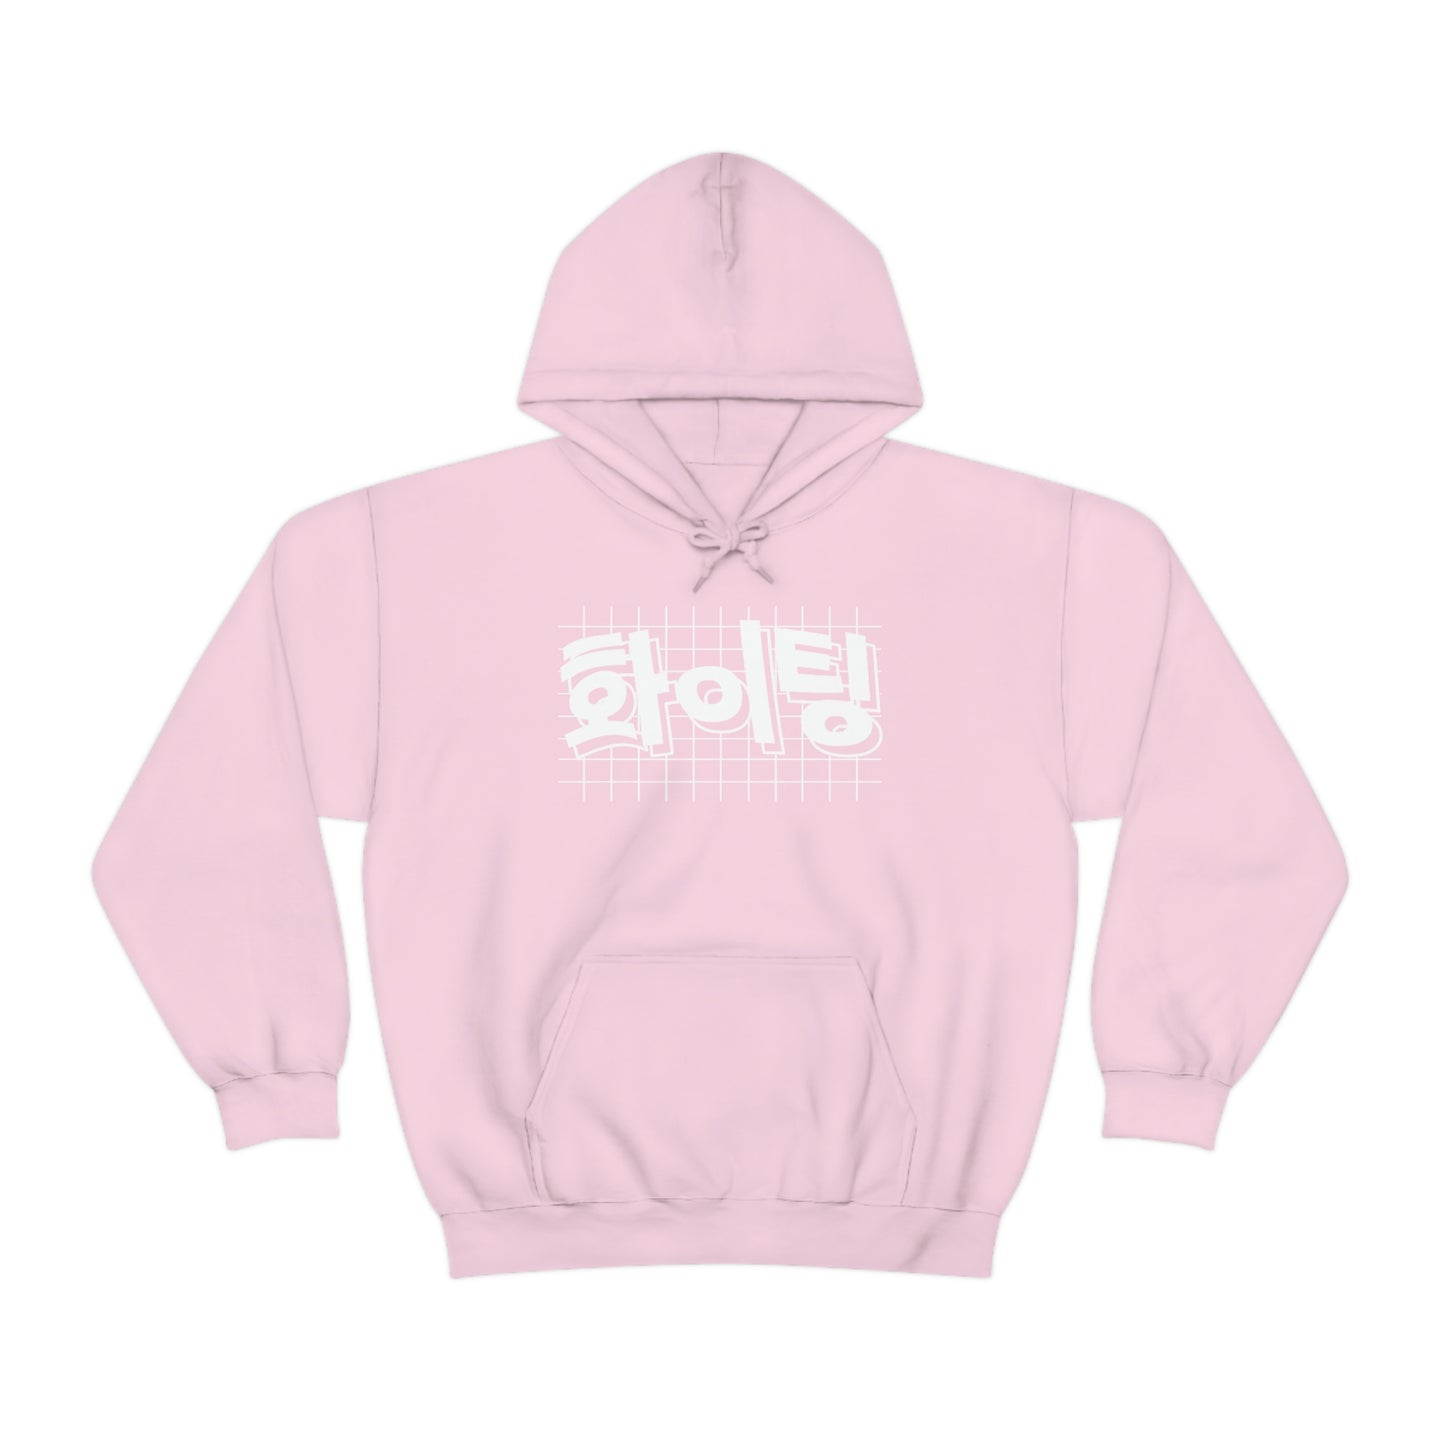 KPOP Hoodie Fighting! Hwaiting! k-pop cute korean clothing kdrama kawaii sweatshirt cute inspirational hangul ulzzang jacket pullover jumper